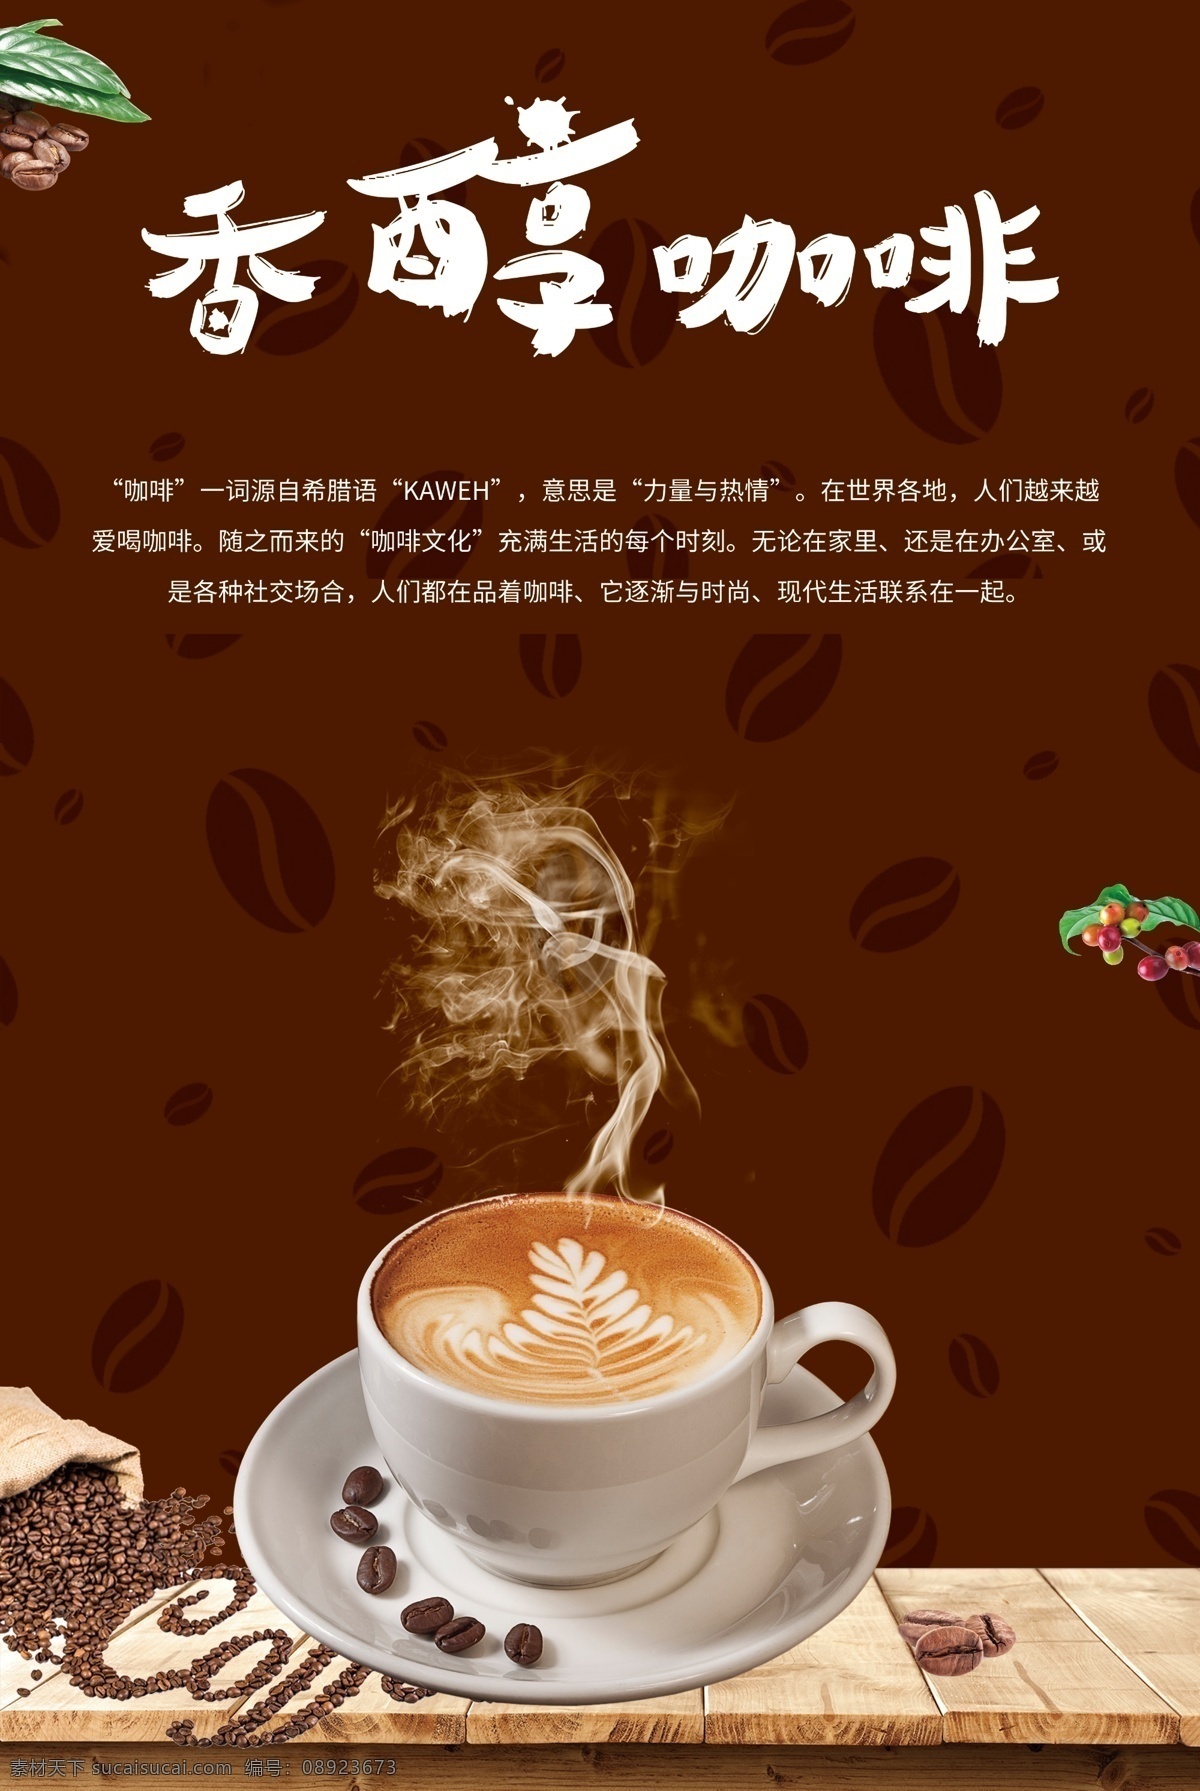 香醇咖啡 咖啡店招聘 海报模板 咖啡豆 咖啡 咖啡杯 生活百科 餐饮美食